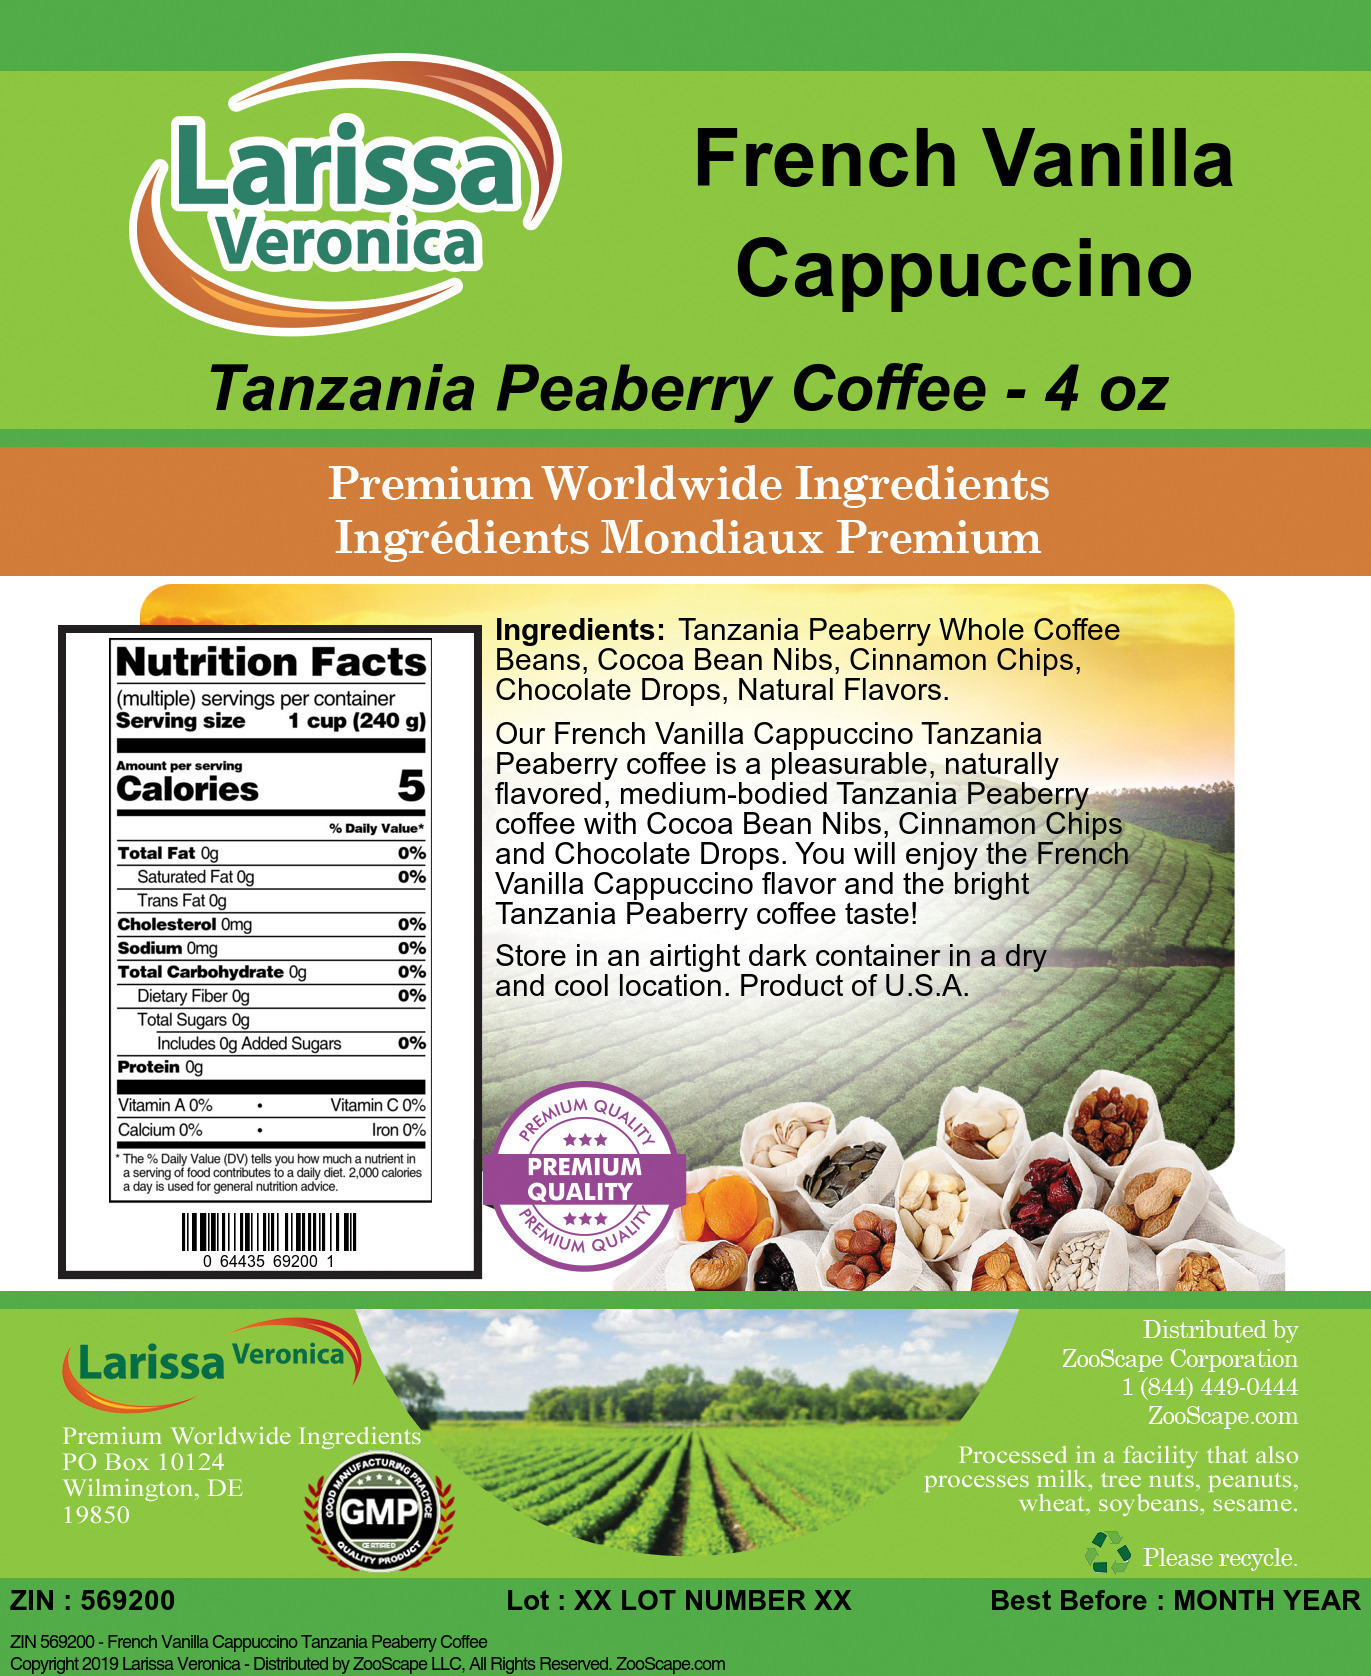 French Vanilla Cappuccino Tanzania Peaberry Coffee - Label